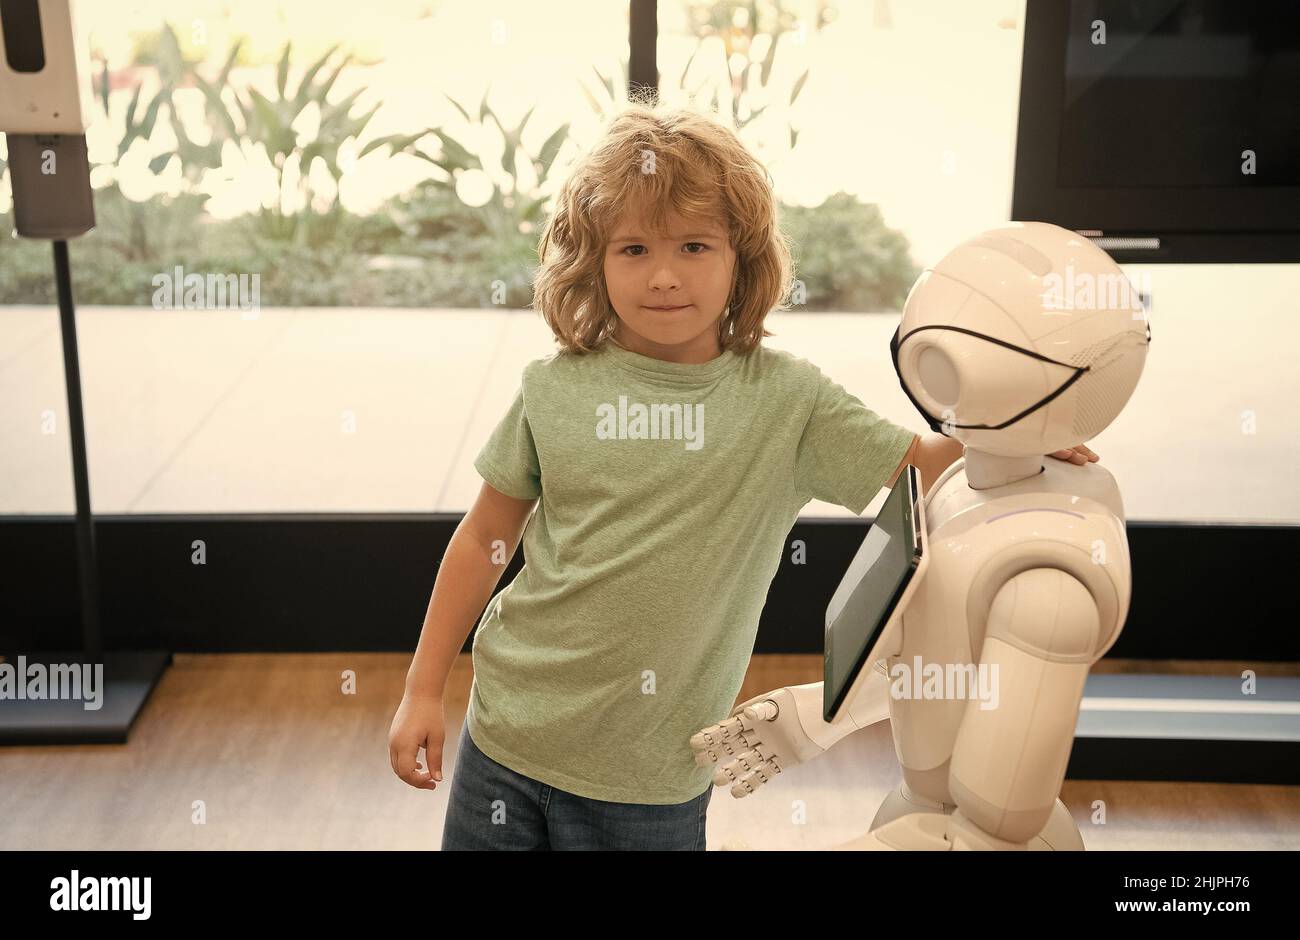 assistant de kid et de robot avec écran d'information dans le masque de protection. robot pandémie future. robot fournir assistance à l'enfant. technologie humanoïde. a Banque D'Images